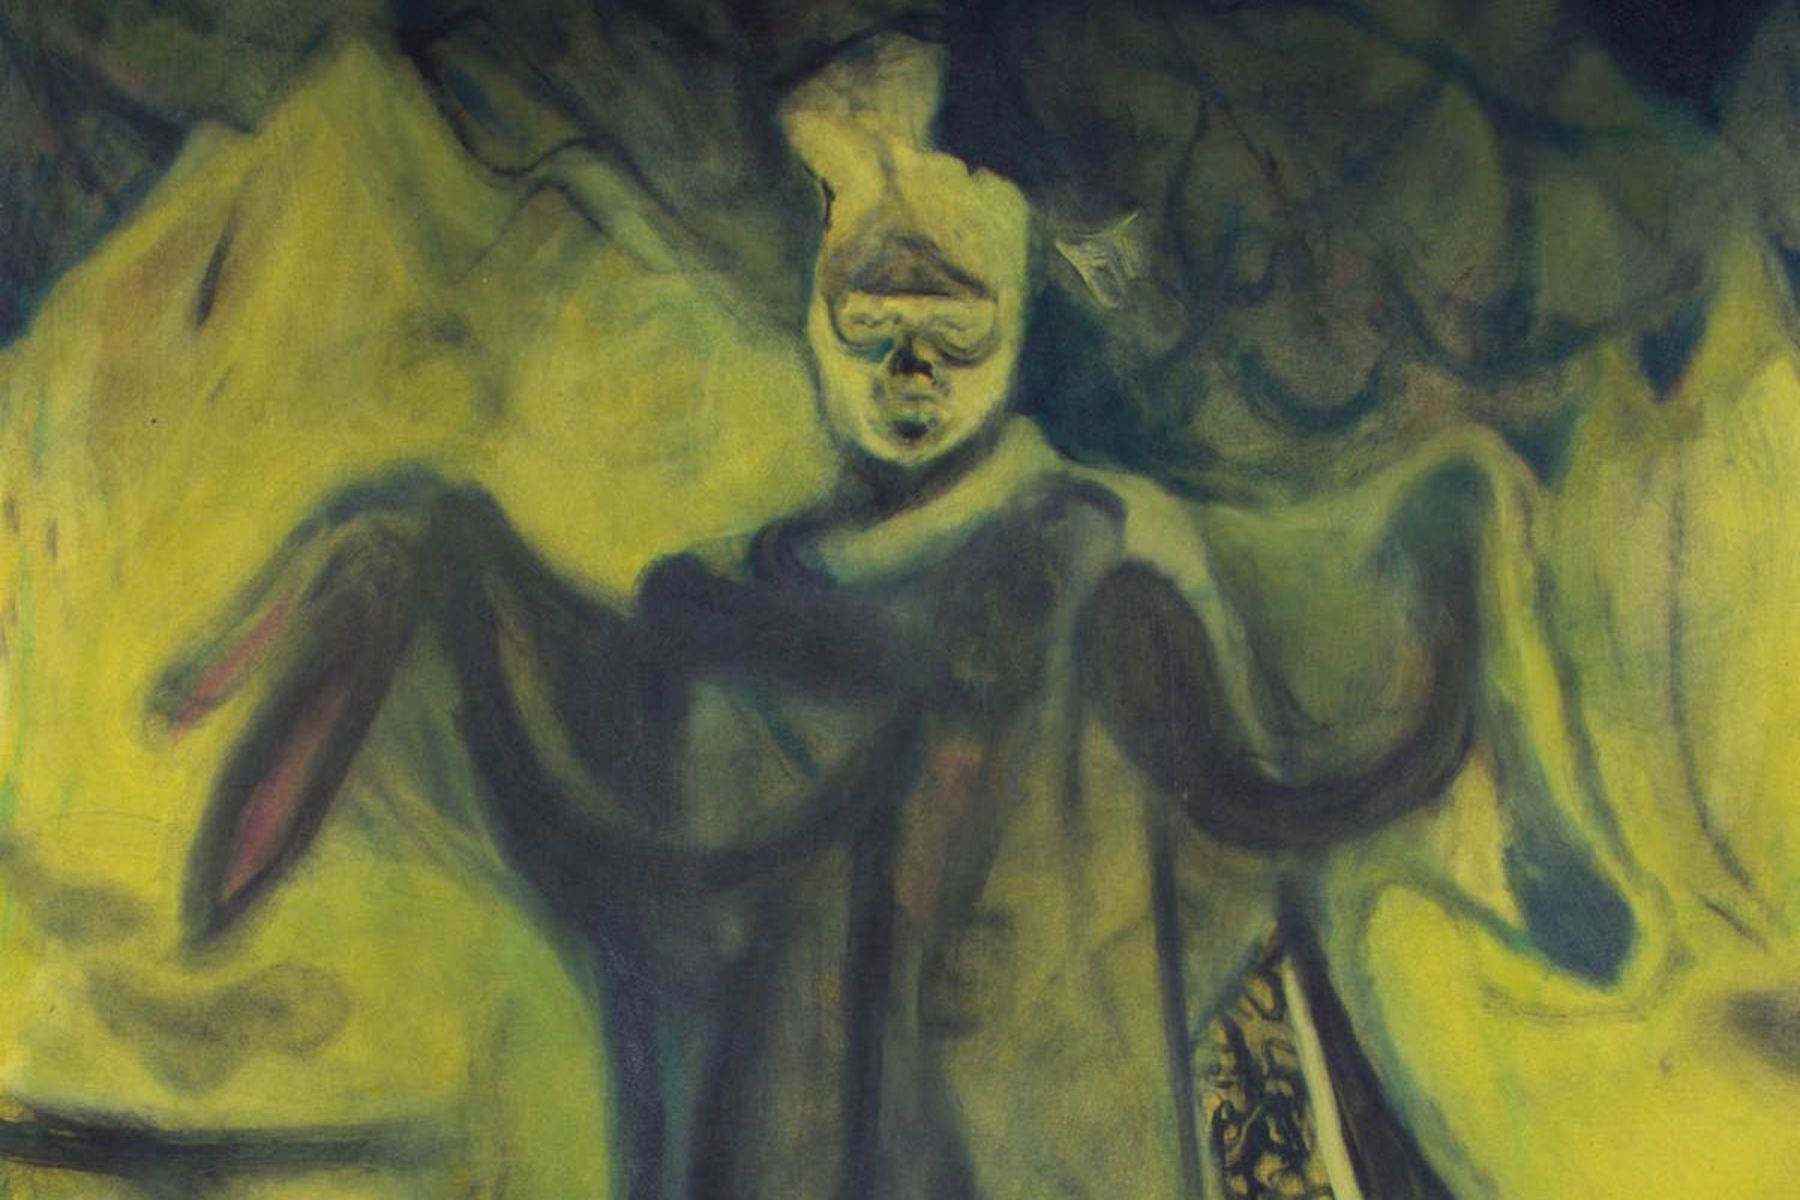 Nebojsa Despotovic, The Man in Me (det.), 2015, oil on canvas, 130×190 cm, ph. F. Covre